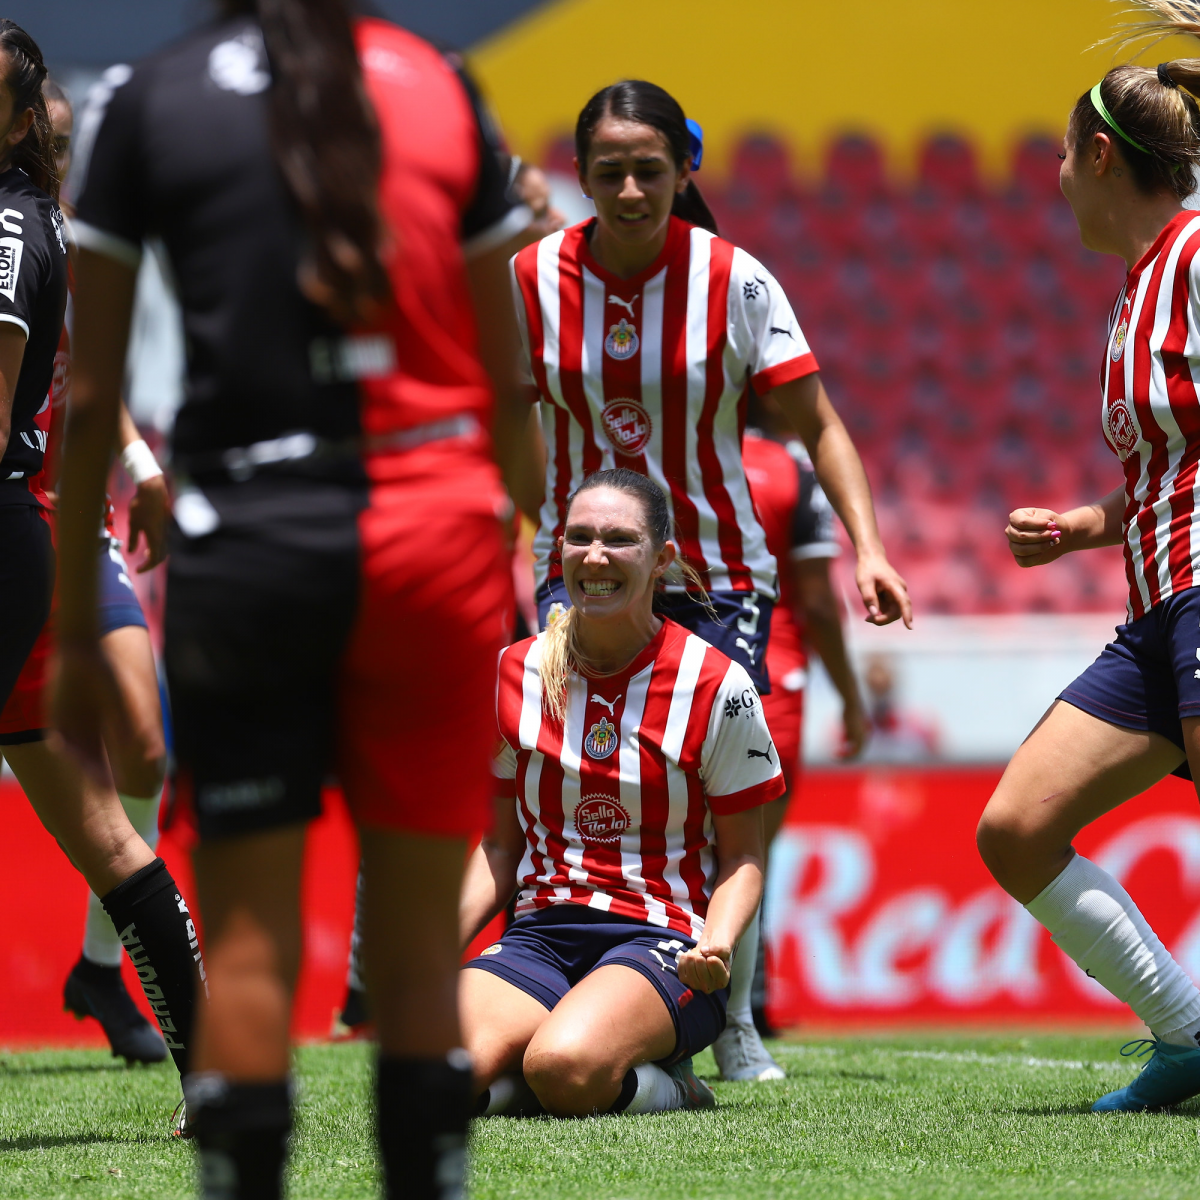 La 'Doctora del gol' marcó su tercer gol con la camiseta de Chivas. (Foto: Chivas Femenil).